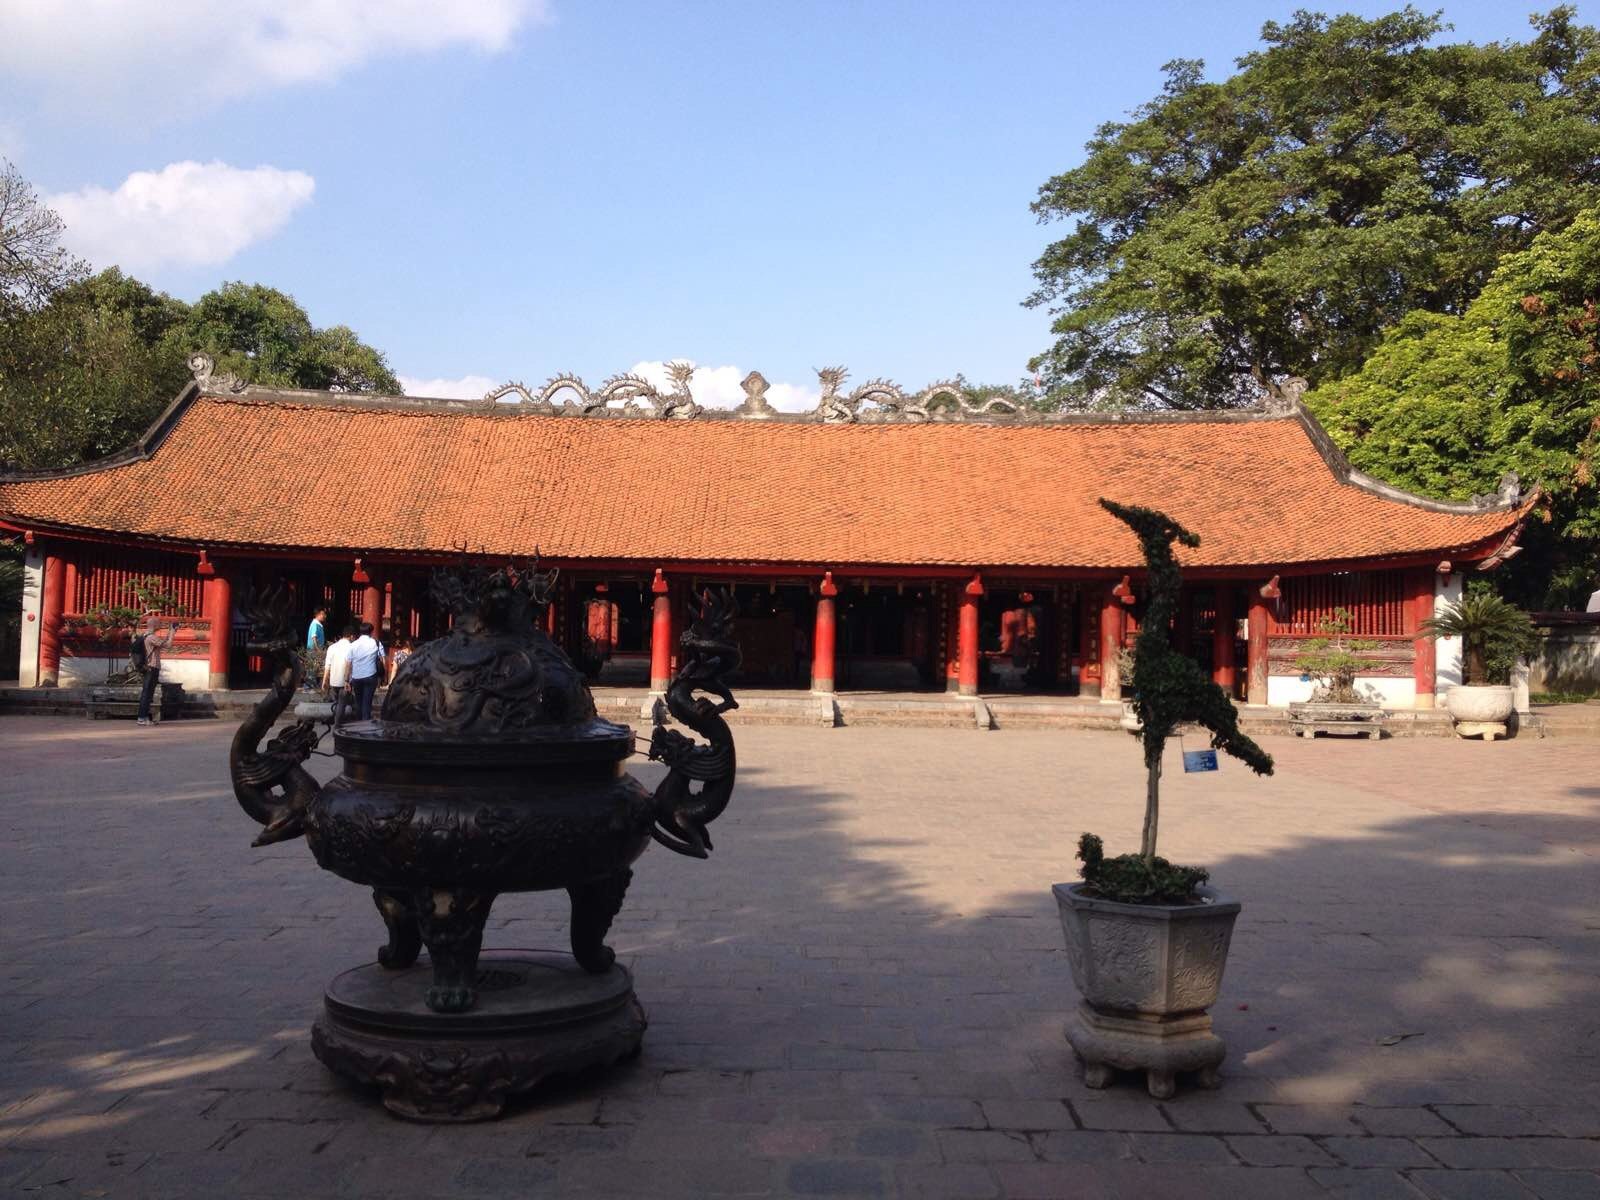 建筑很有中国特色,只是比较矮! 河内文庙